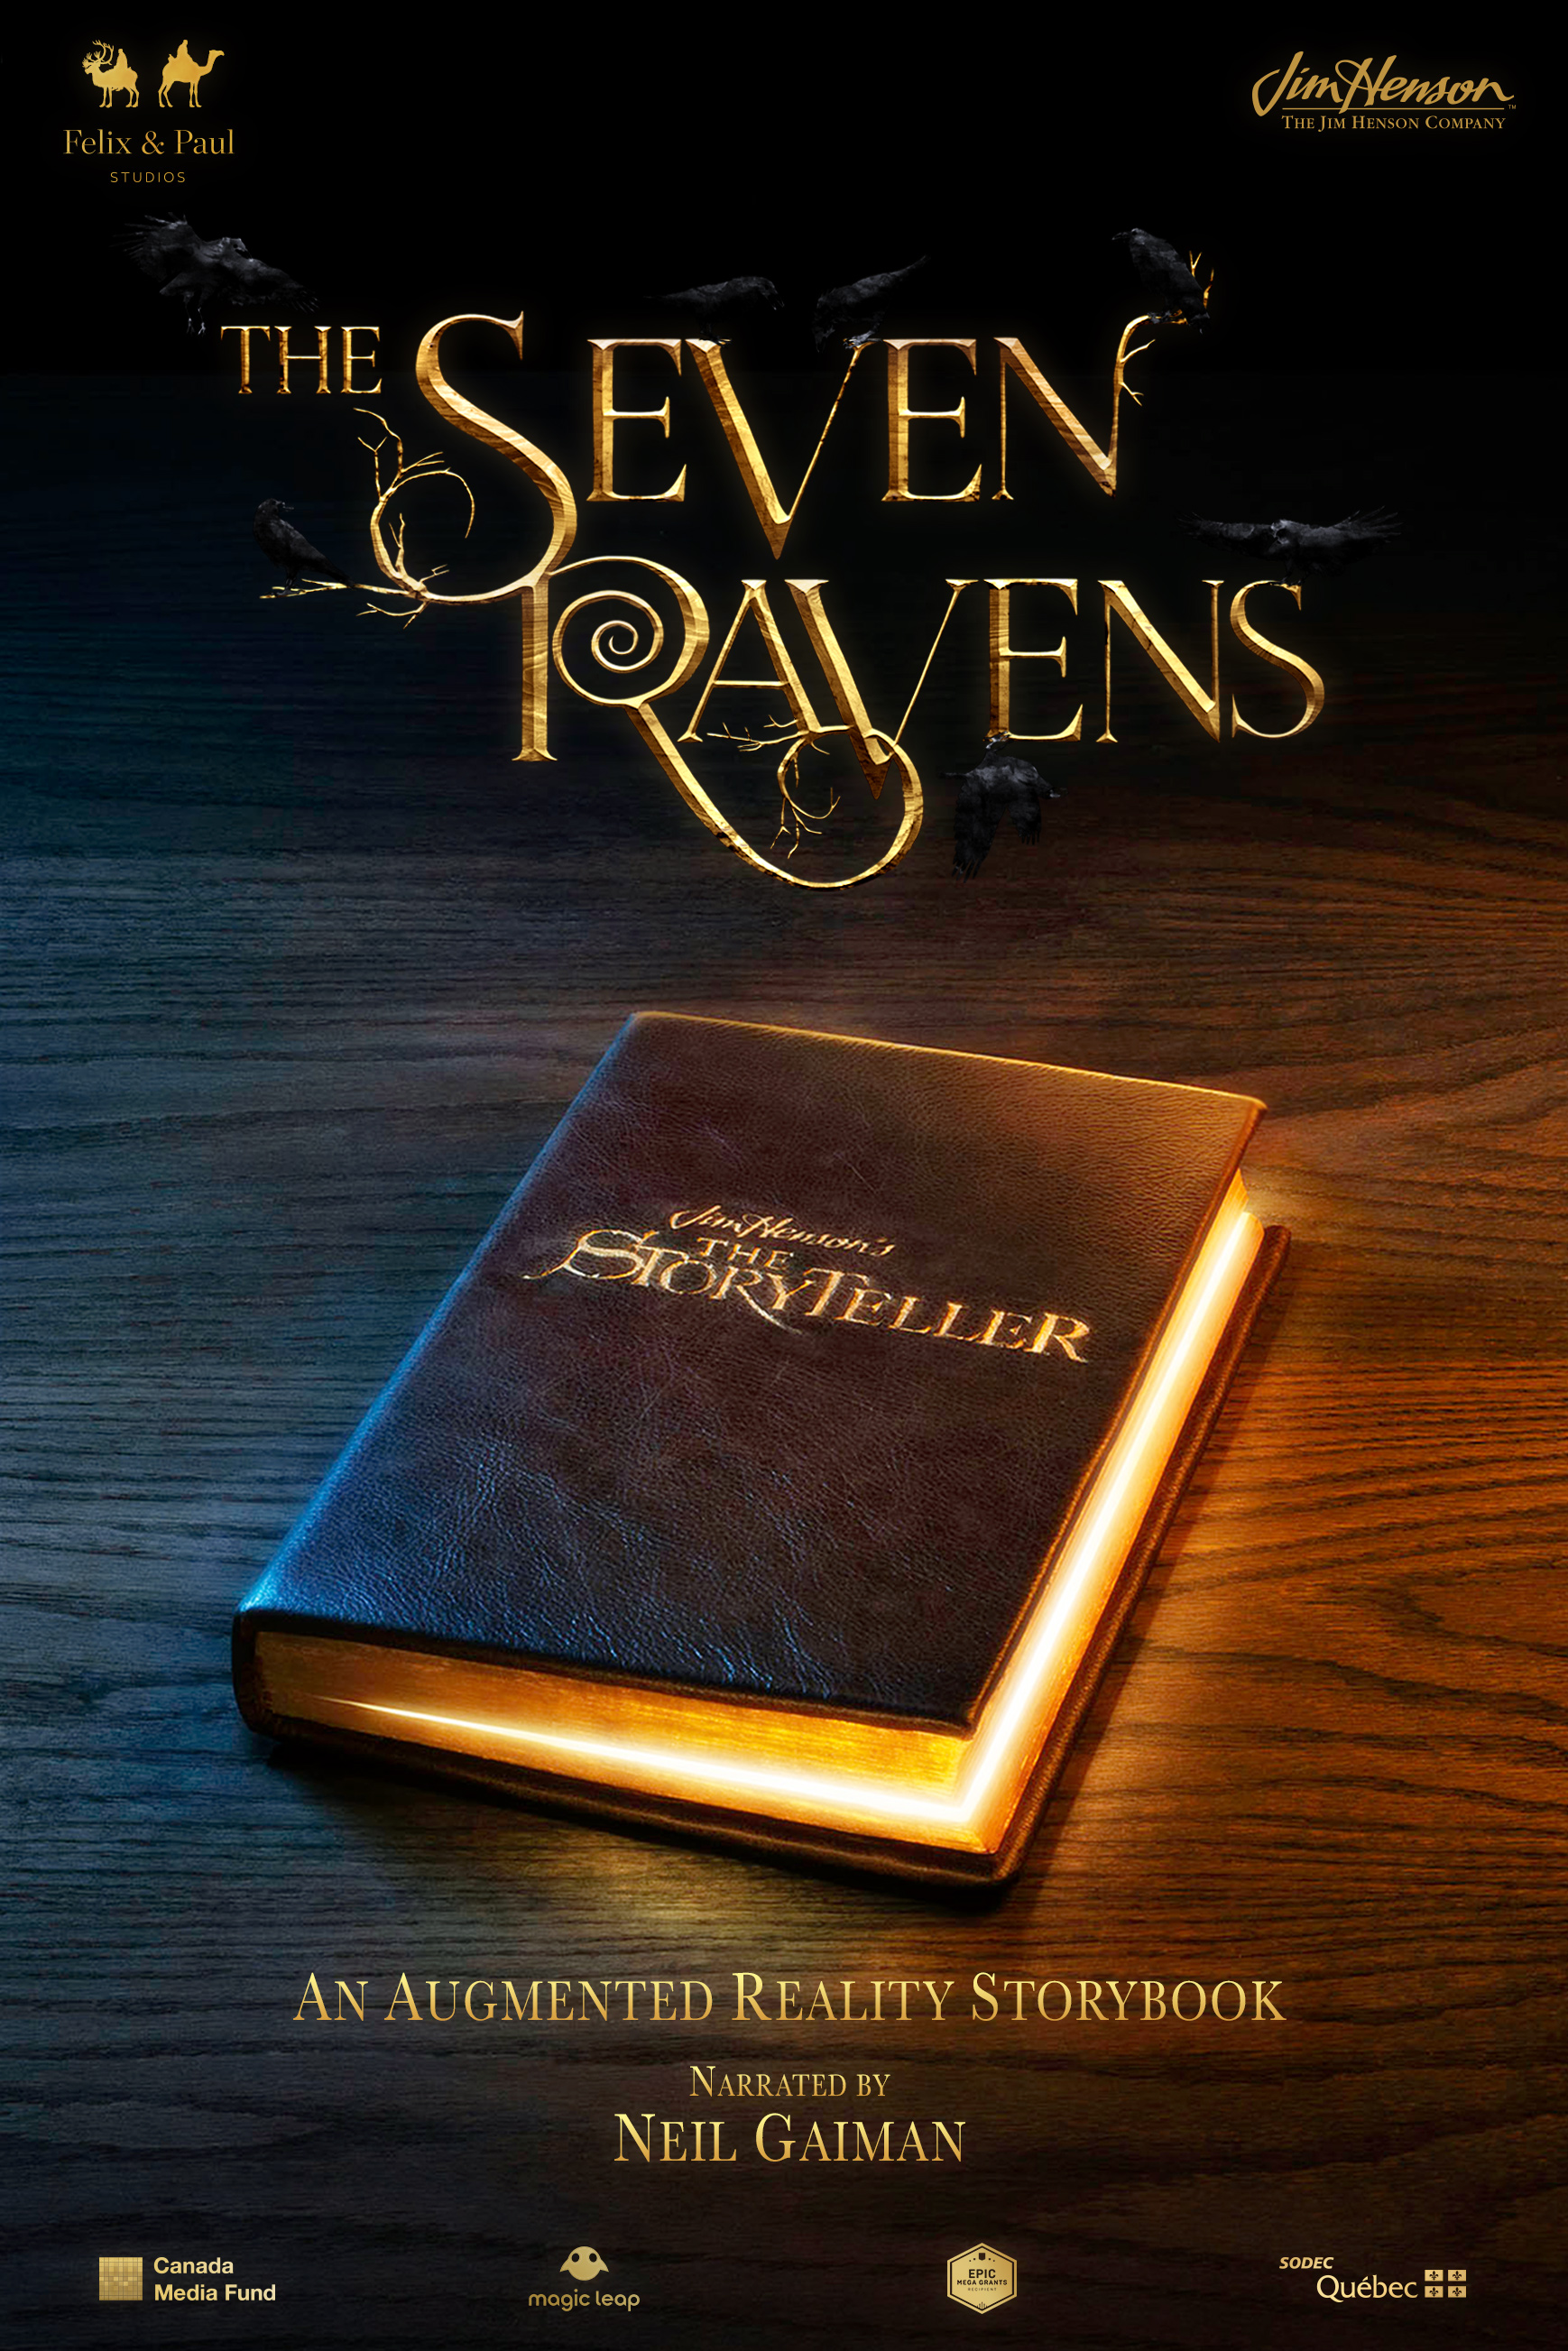 The Storyteller: The Seven Ravens